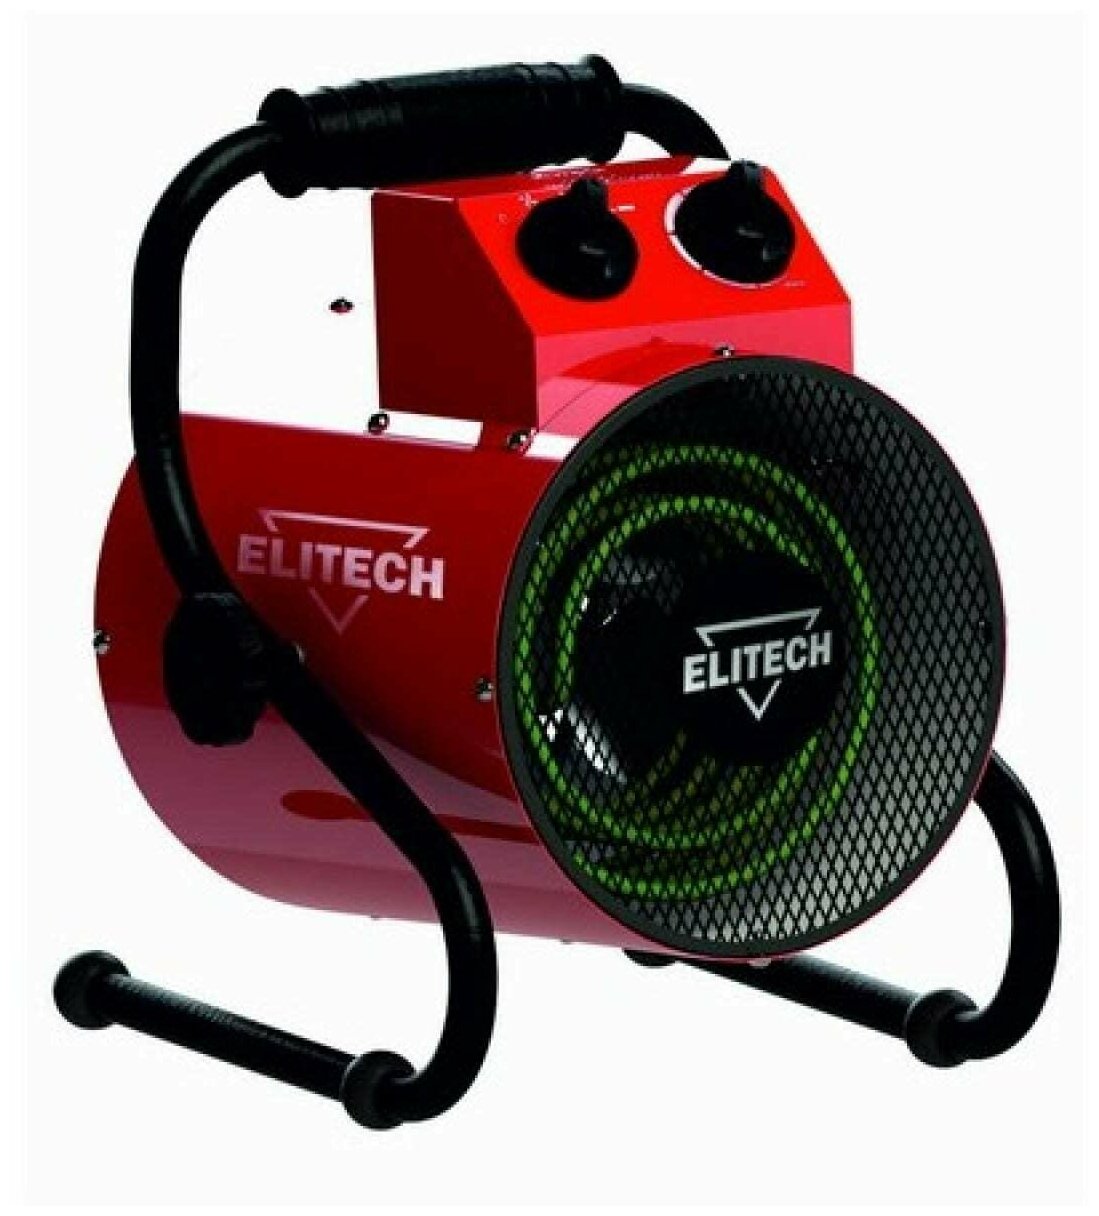 Тепловая электрическая пушка ELITECH ТВ 5ЕК подарок на день рождения мужчине, любимому, папе, дедушке, парню